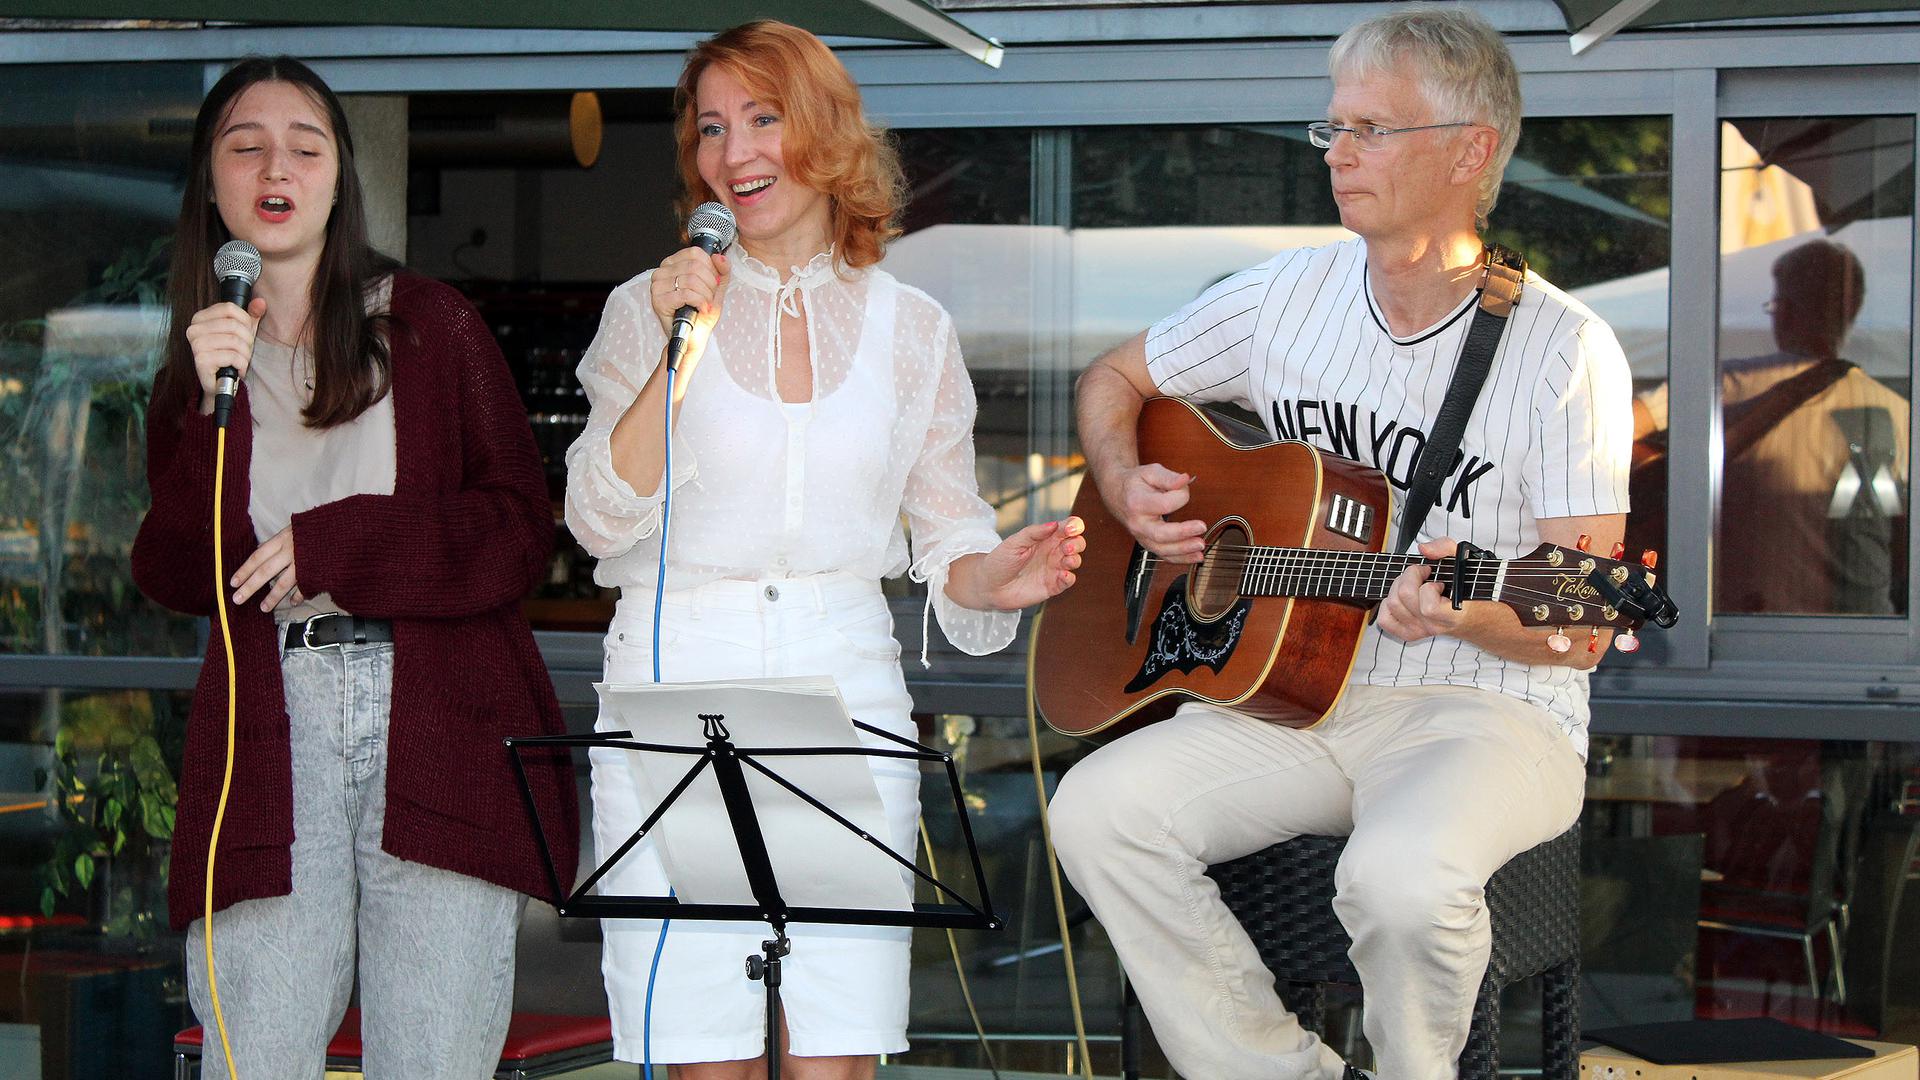 Mit Freude und Leidenschaft bei der Sache: Helmut Frey begleitet die Lieder von Julia und Nataliia Stakhorska (von links) an der Gitarre.